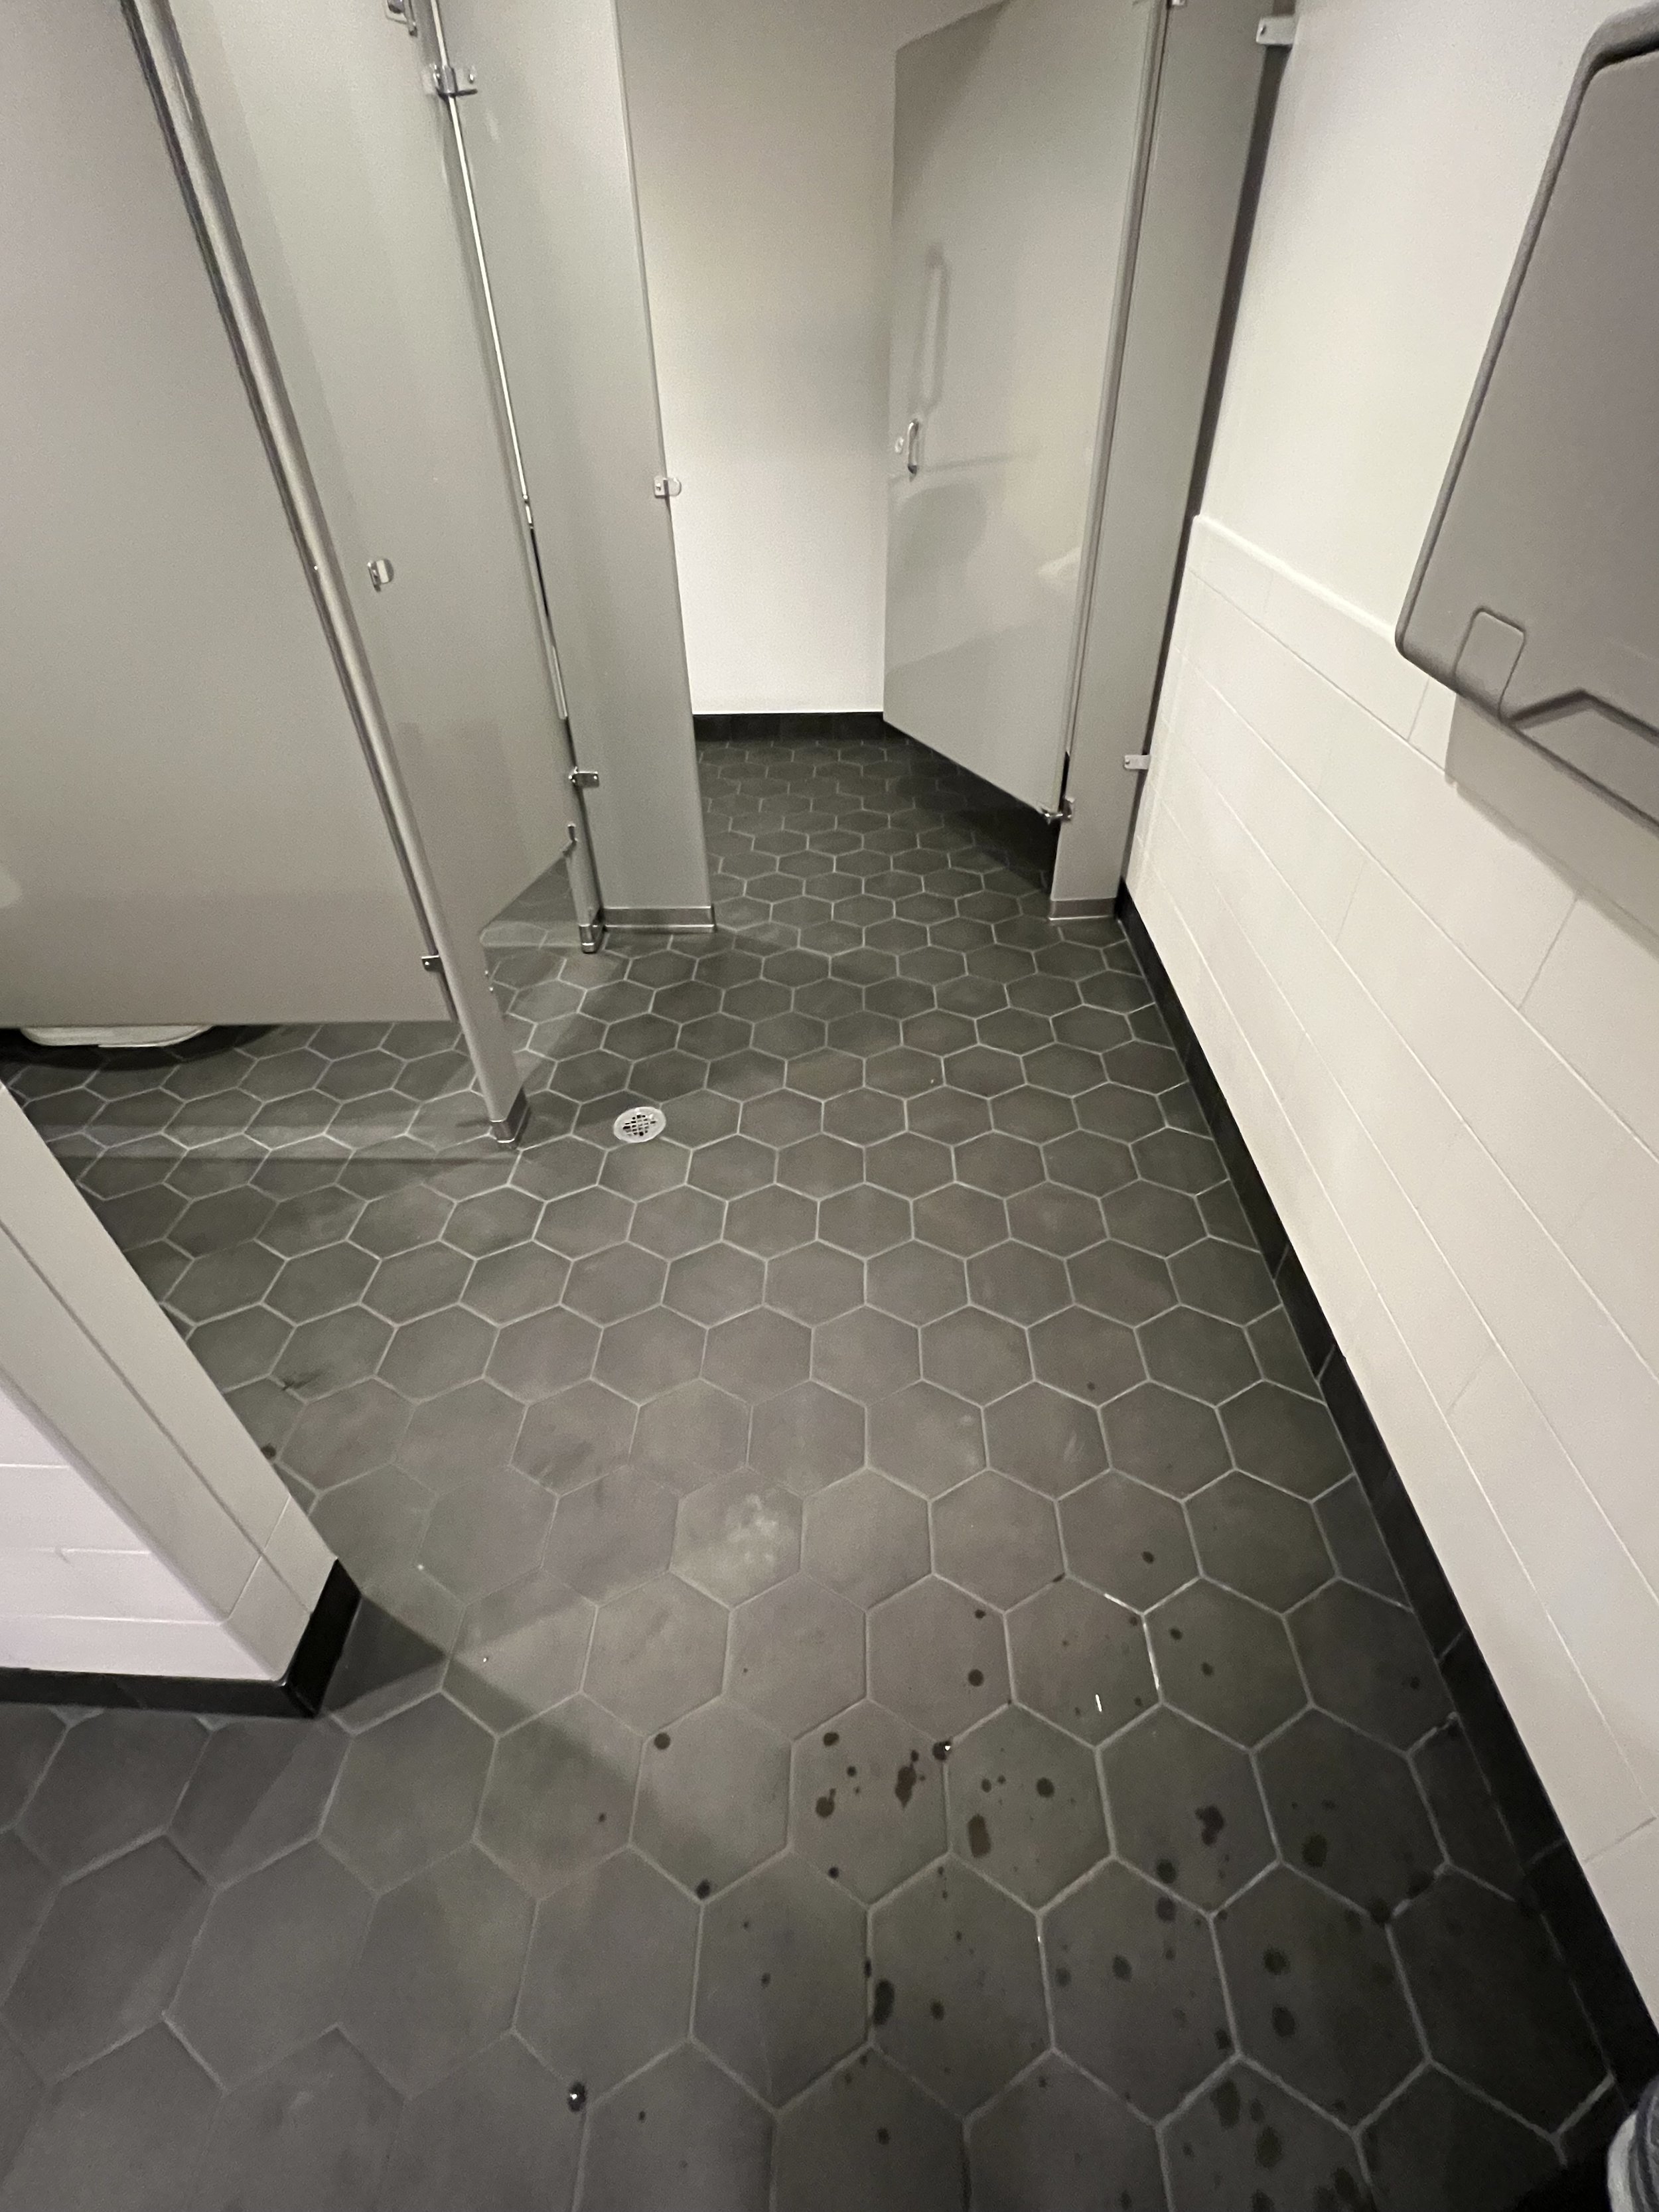 Restroom tile